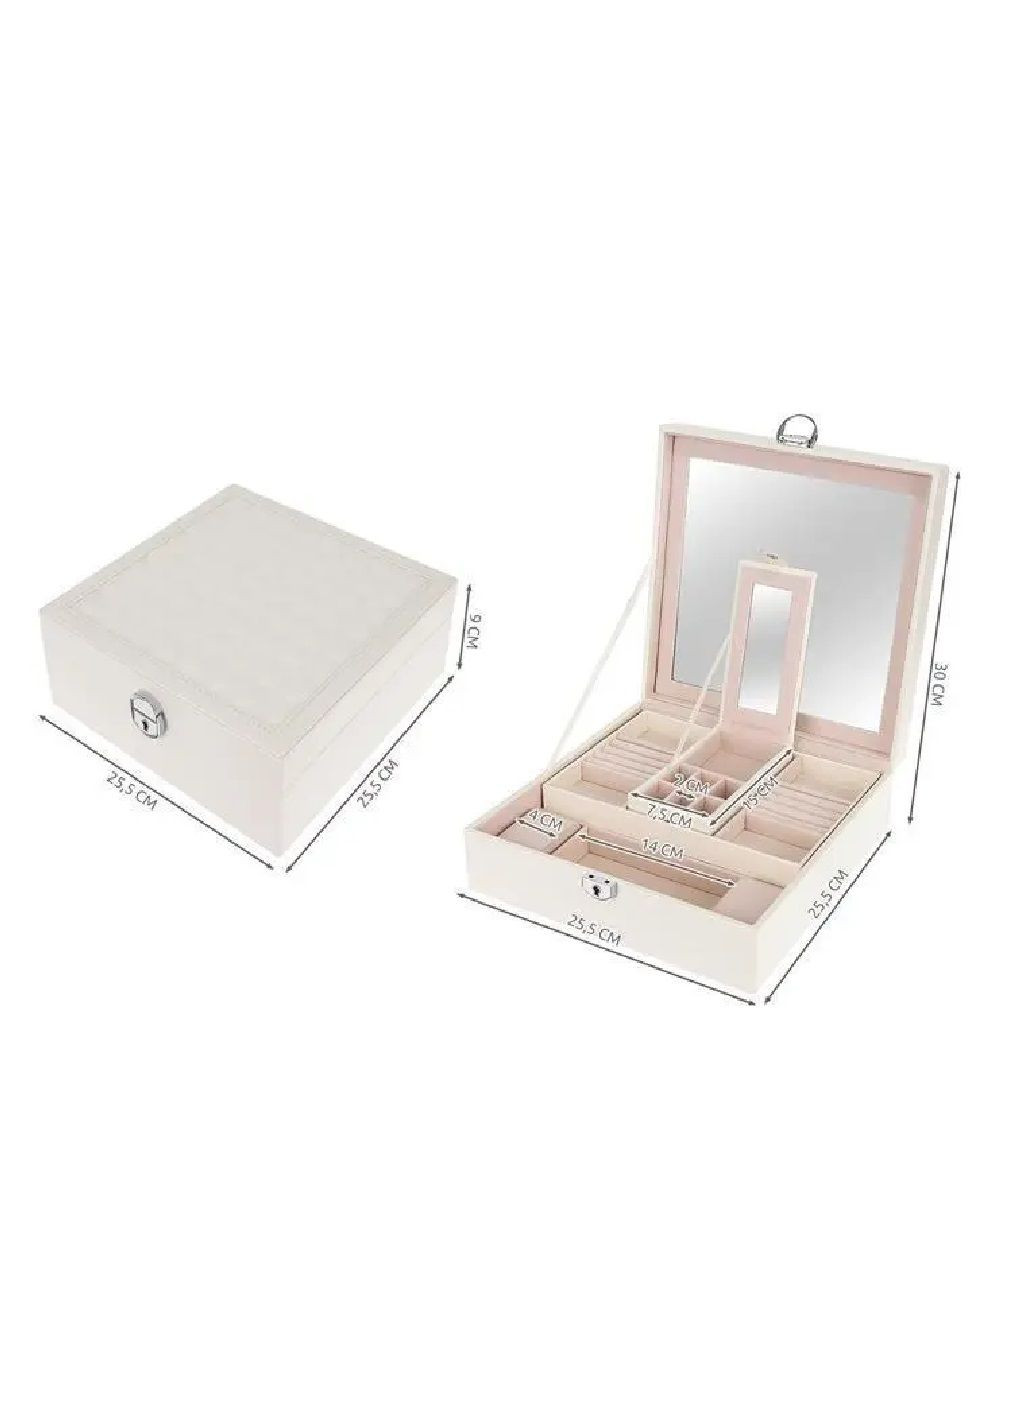 Шкатулка футляр ящик короб бокс органайзер для украшений драгоценностей с зеркалом ключом 25,5х25,5х30 см (476675-Prob) Белая Unbranded (288044367)